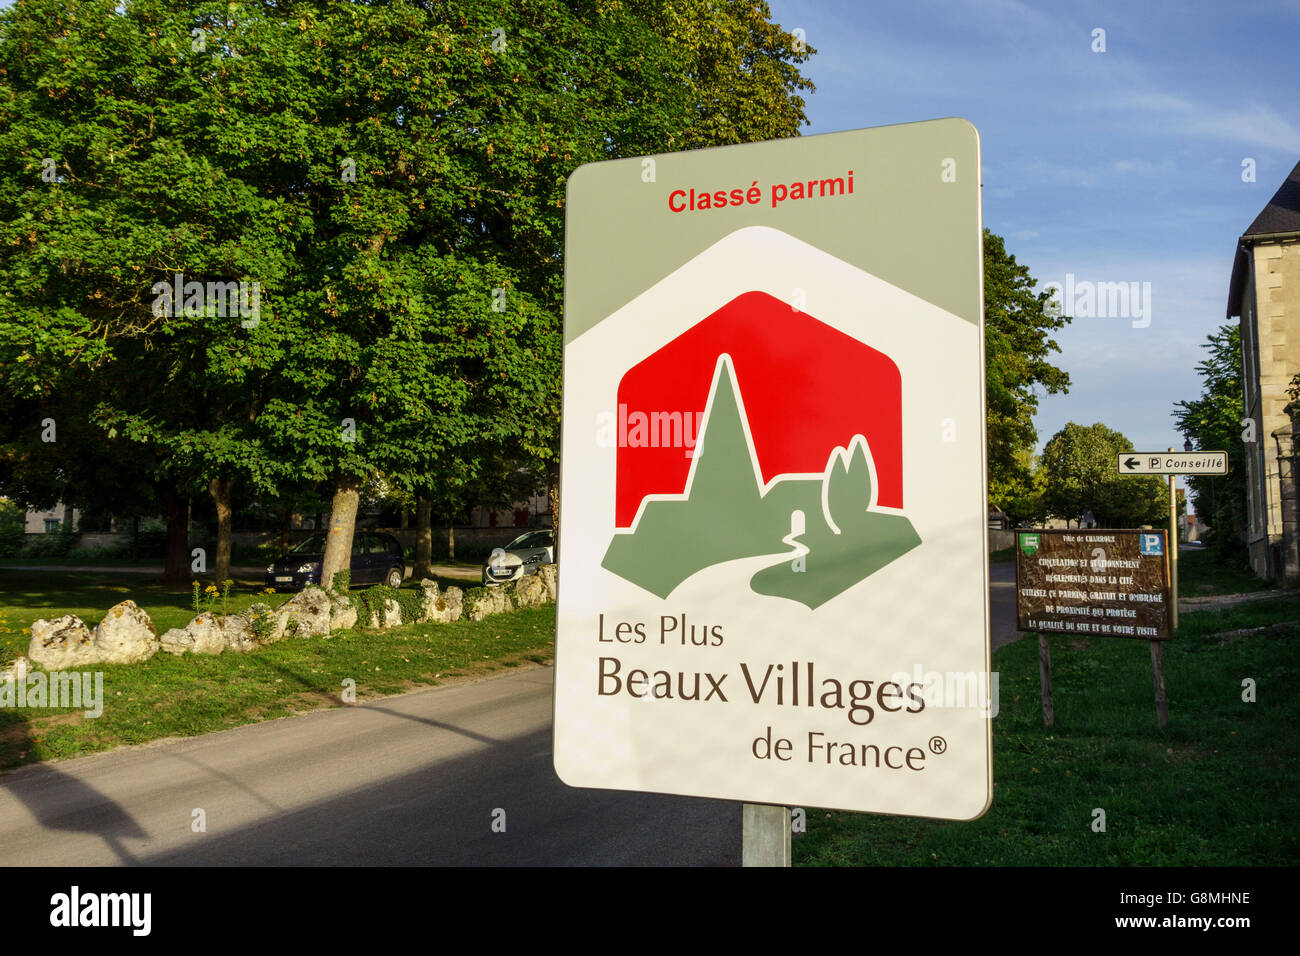 Le signe dit ce village est classé parmi les plus beaux villages de France Banque D'Images